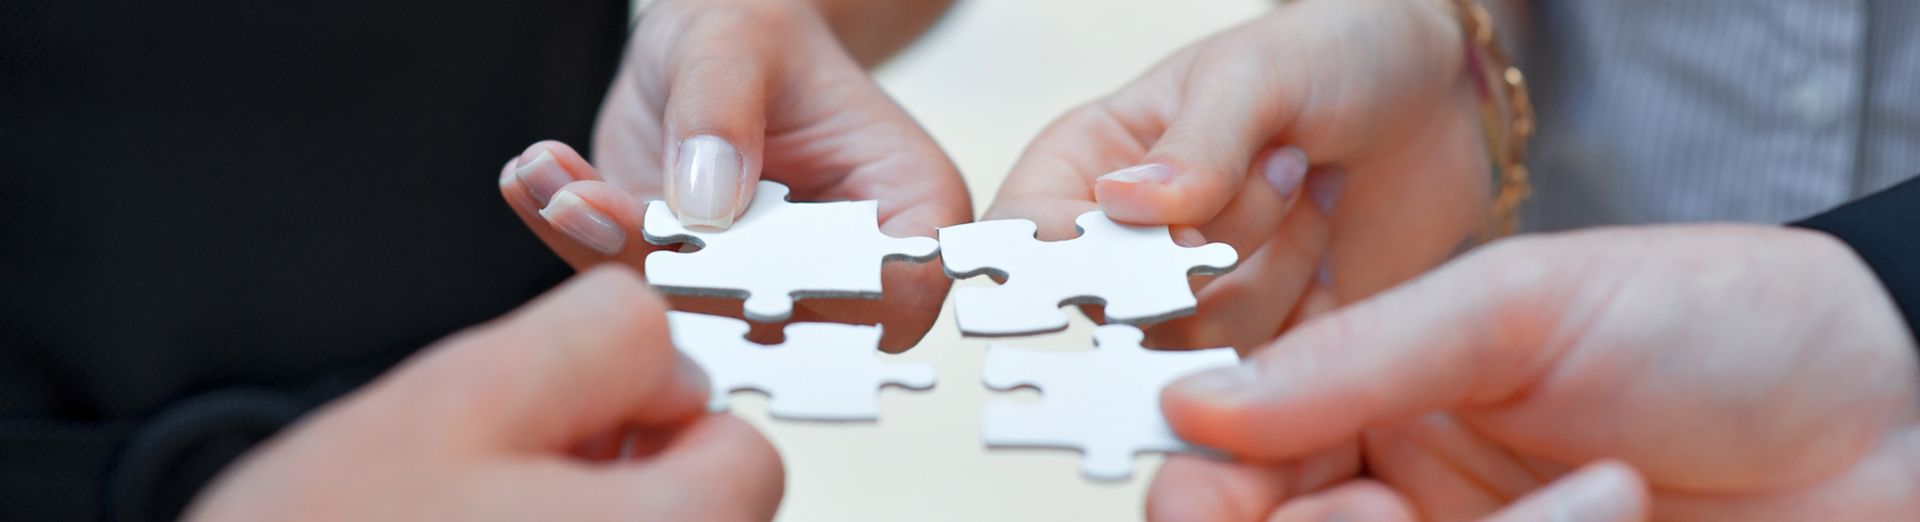 Il collegamento delle tessere di un puzzle rappresenta il valore dell'integrazione, la visione del quadro generale